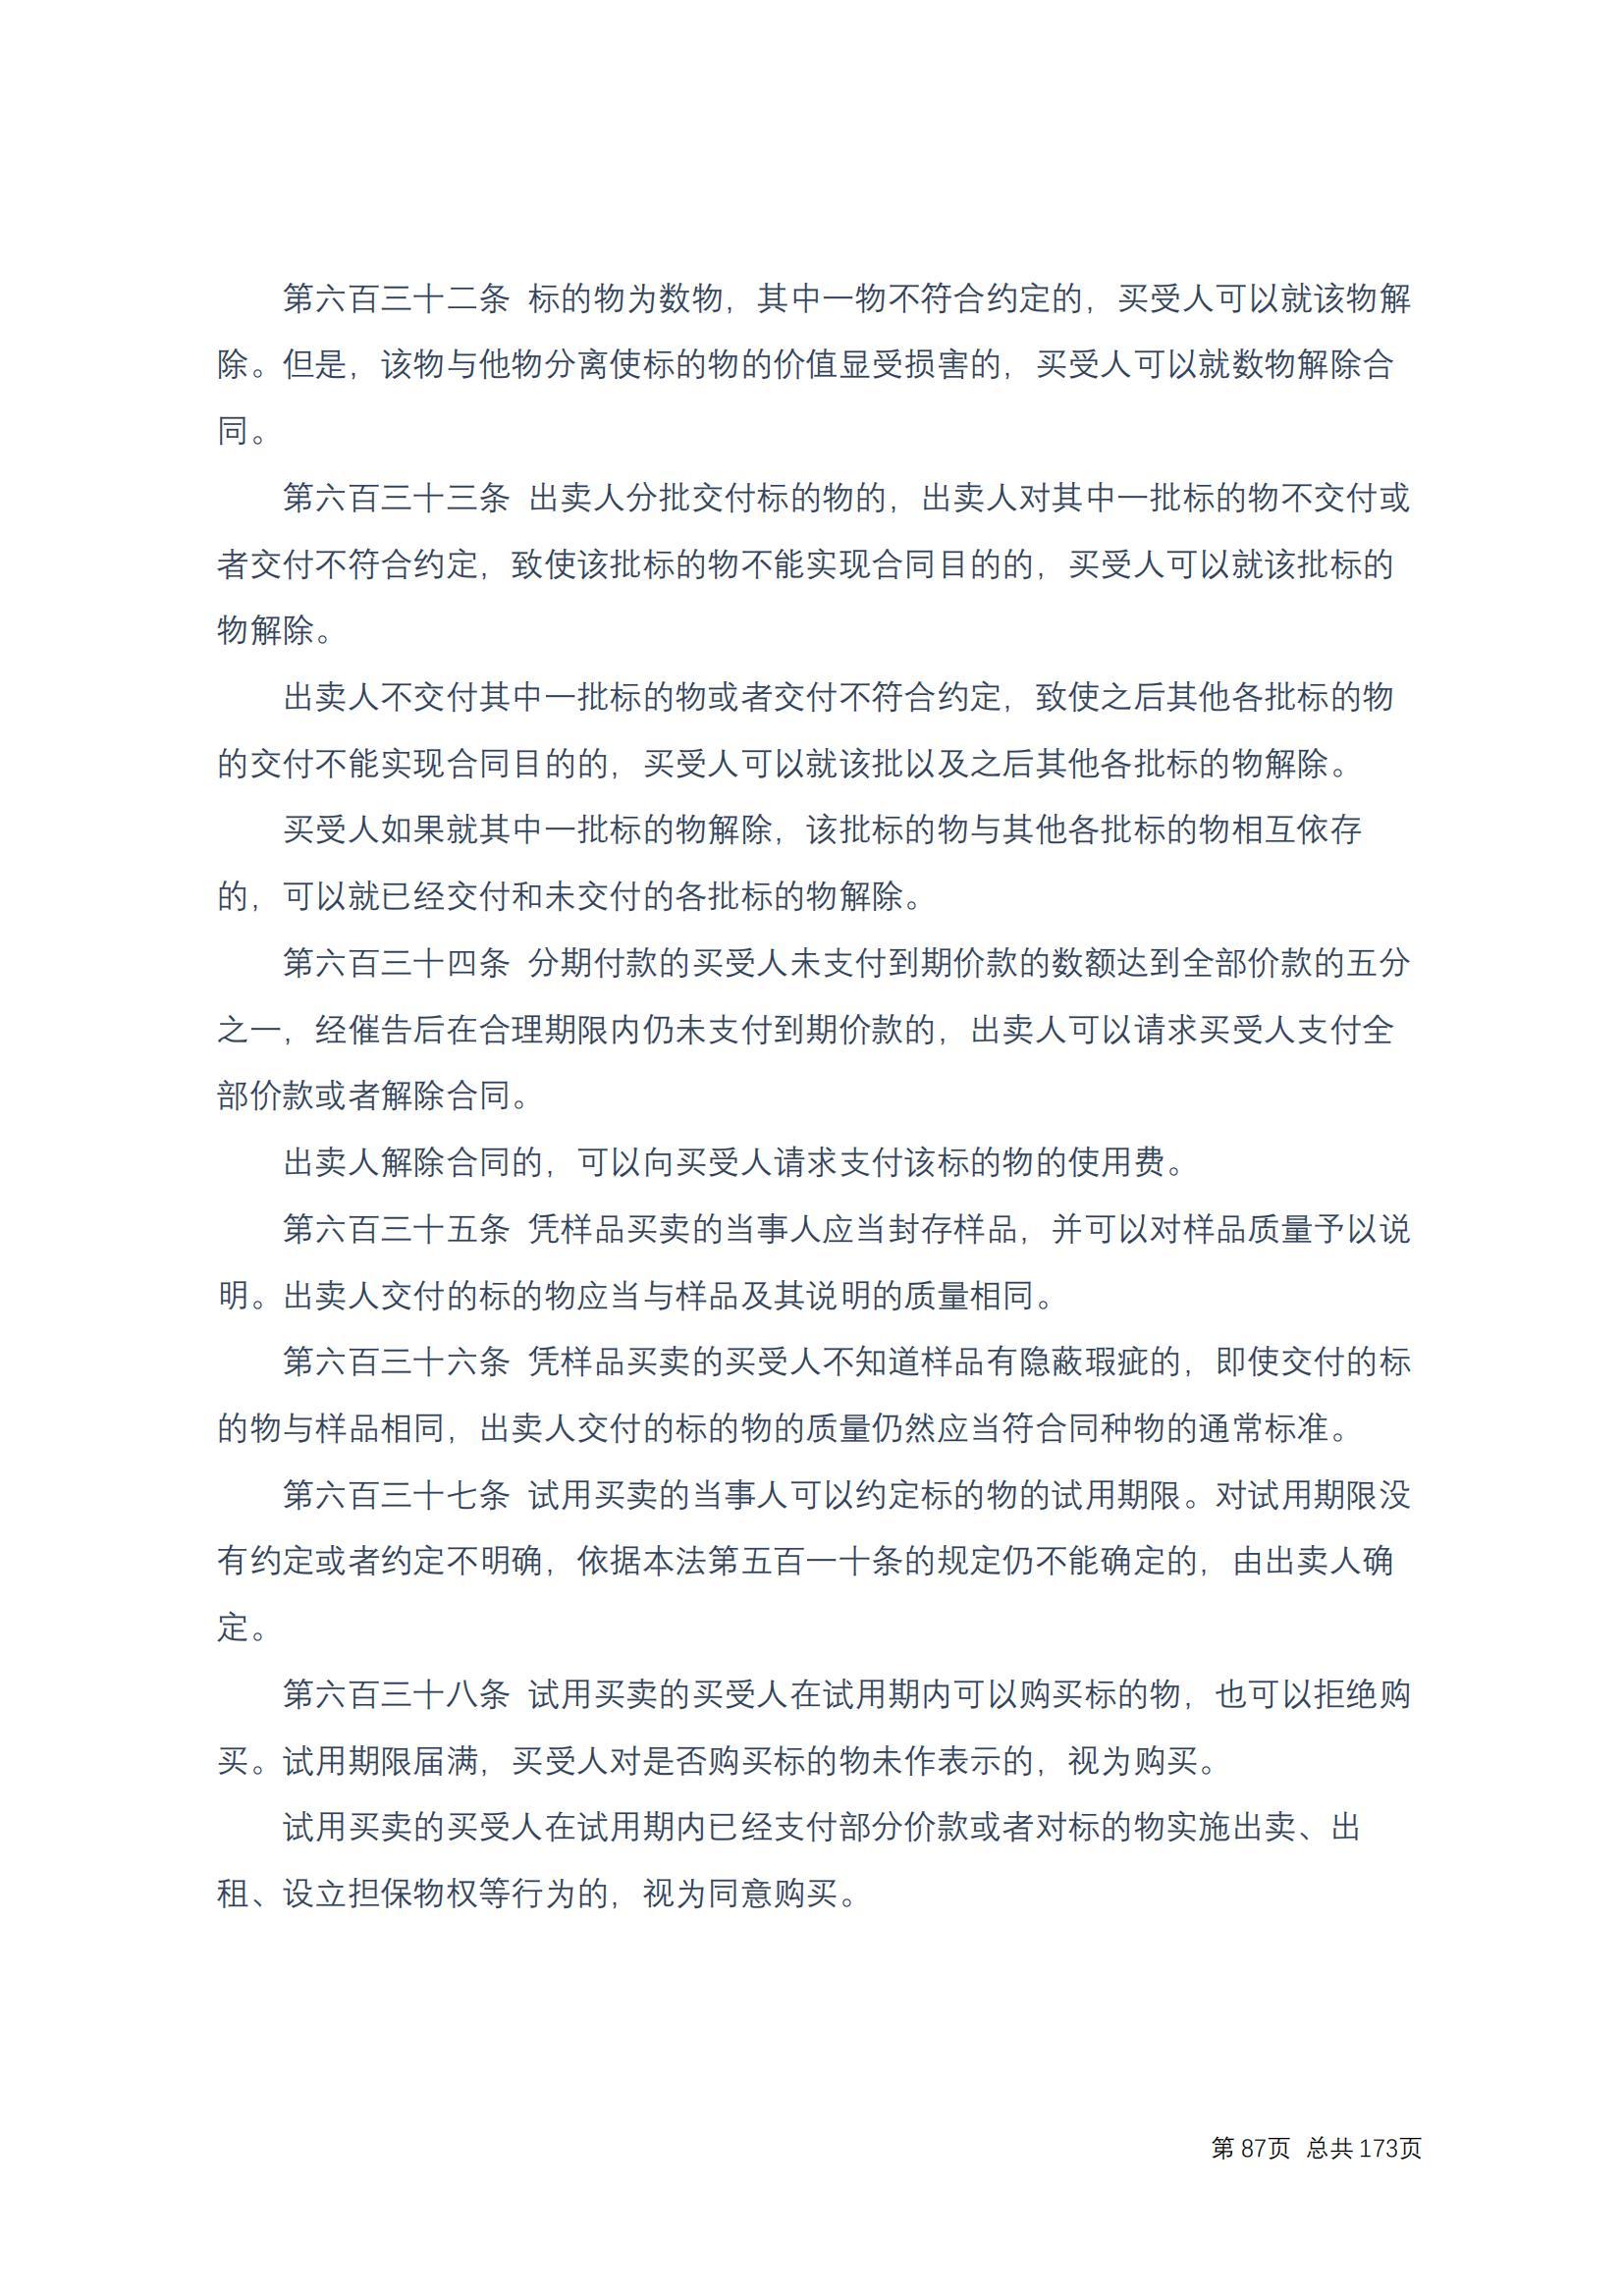 中华人民共和国民法典 修改过_86